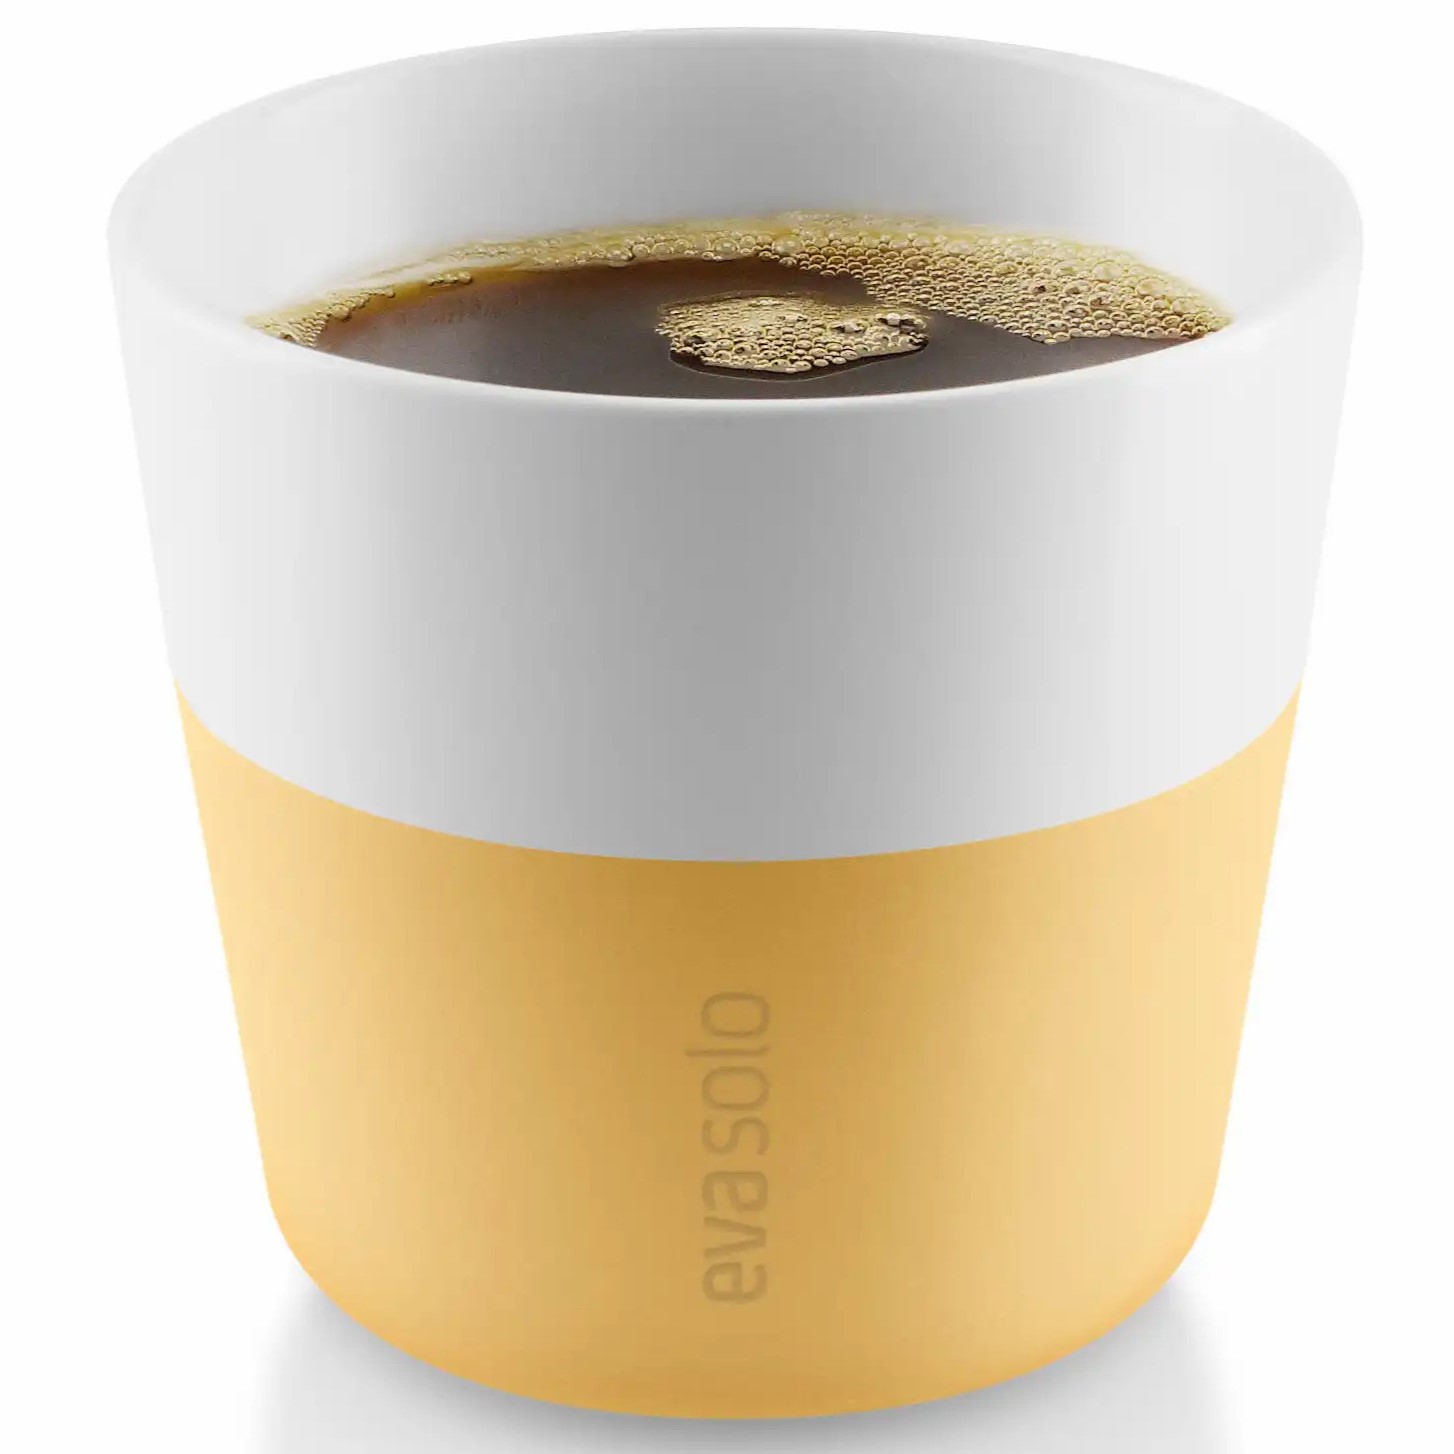 Sada hrnků na kávu lungo 2 ks 230 ml, zlatavě písková, Eva Solo